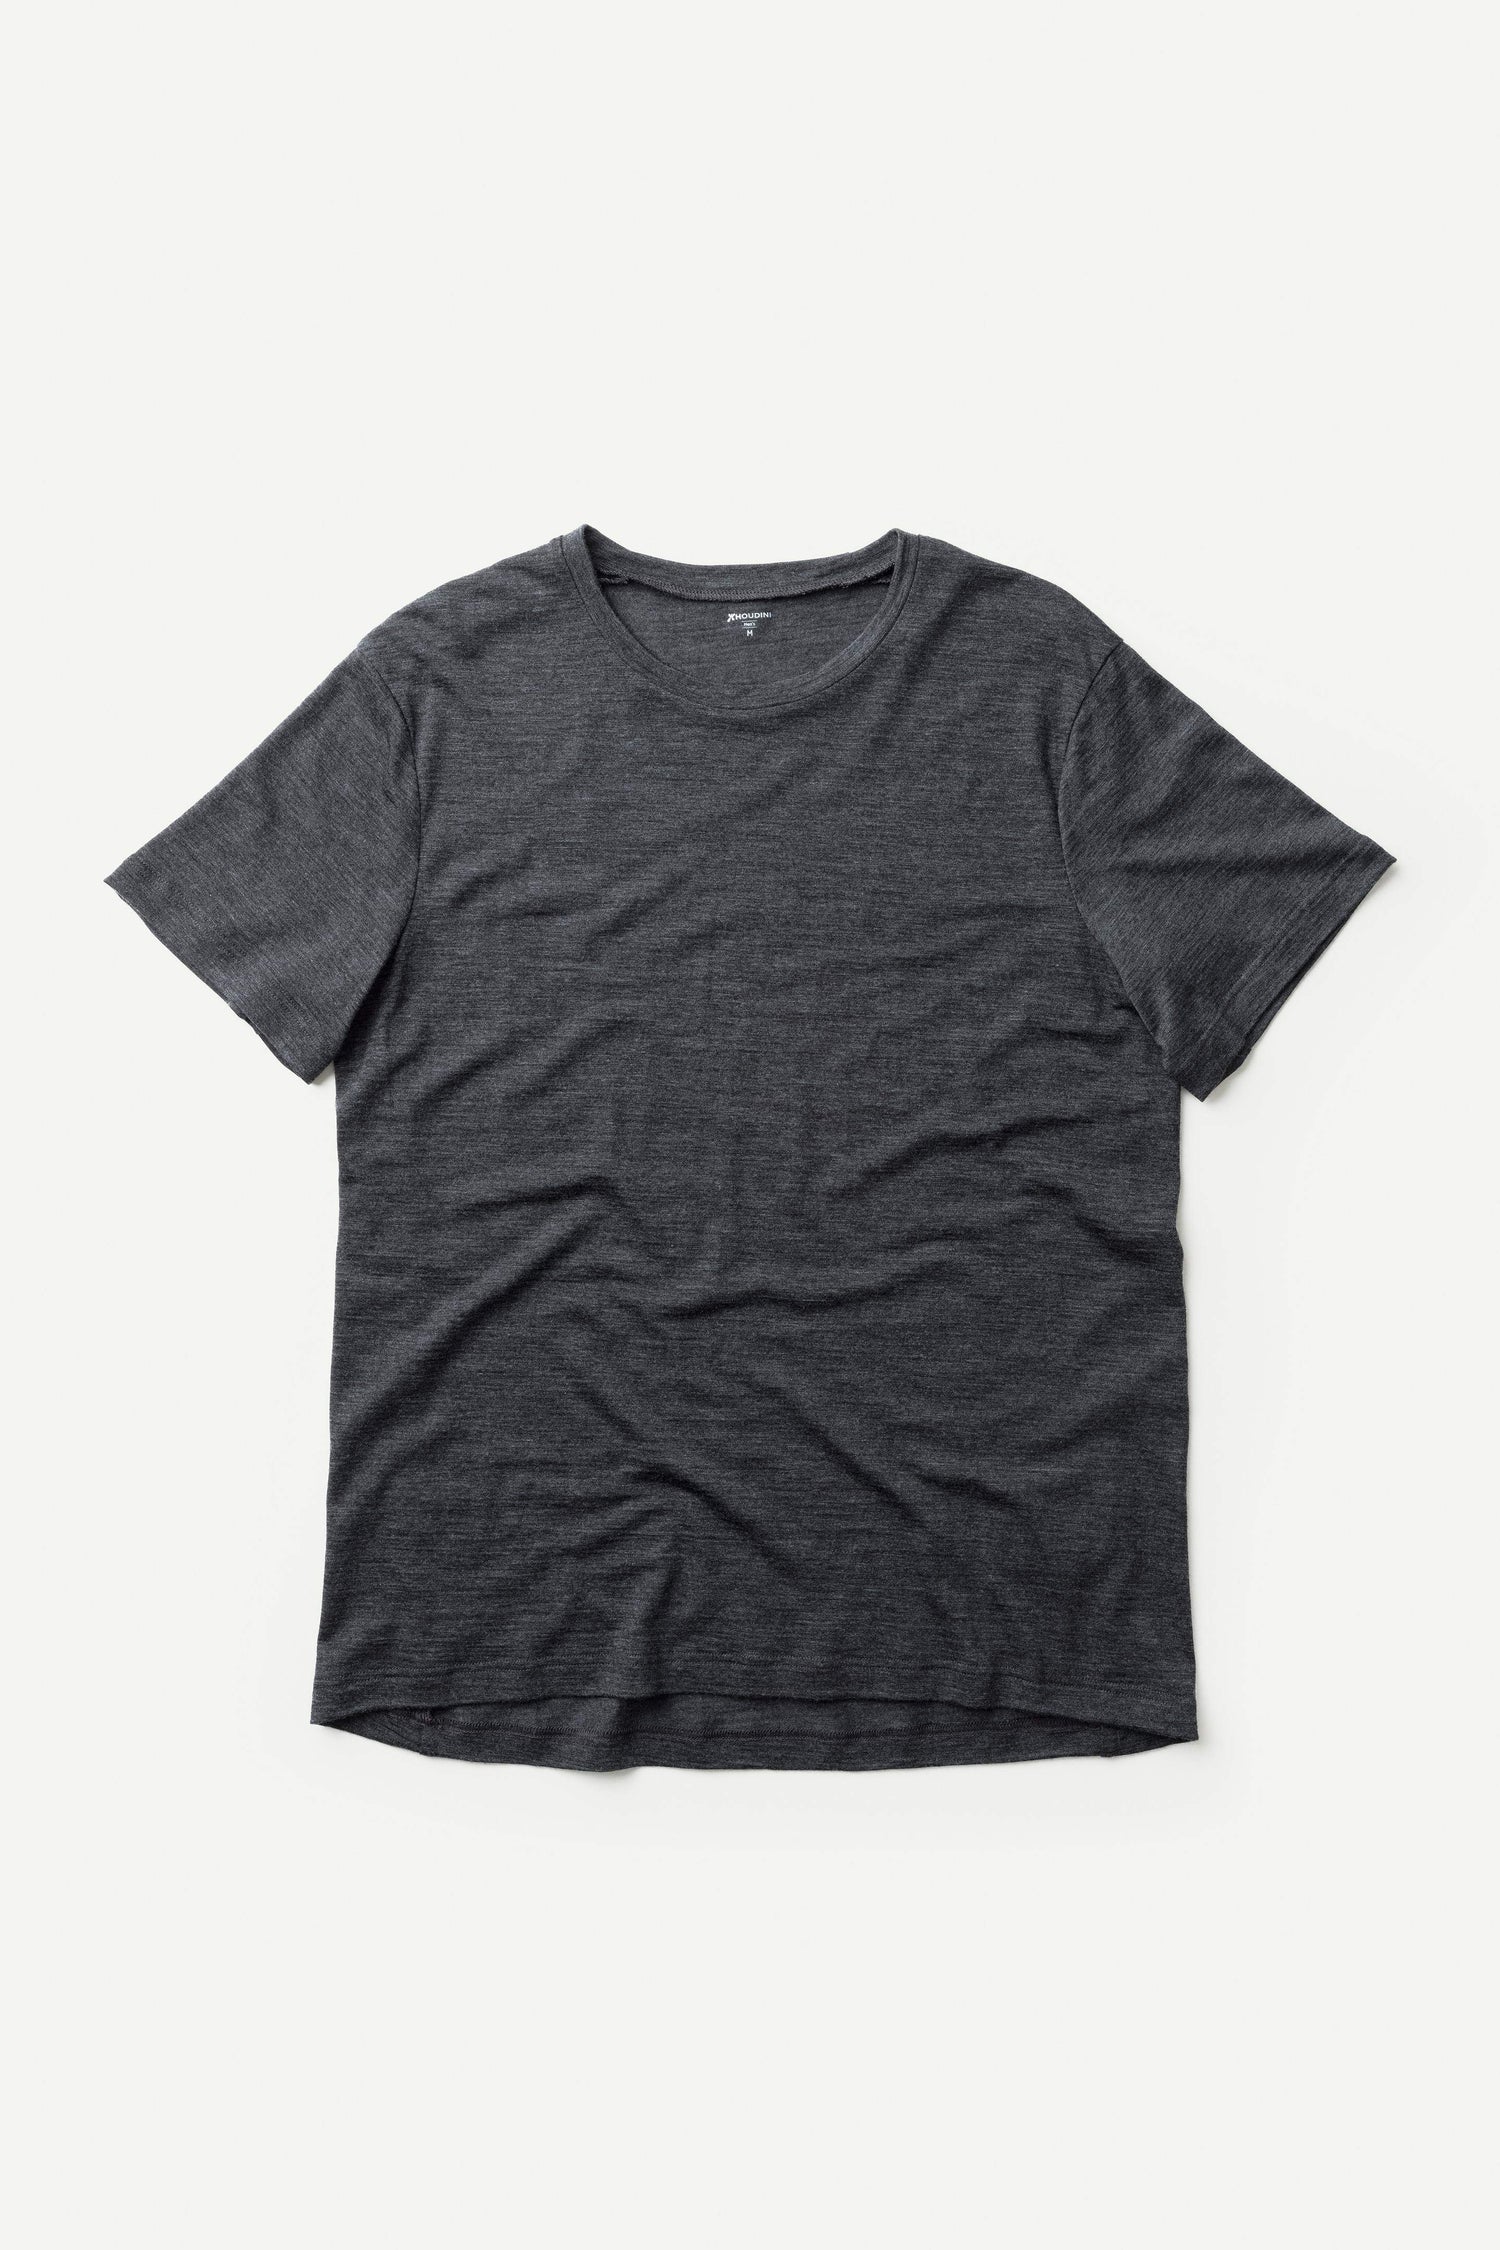 – für Weekendbee Aktivist Houdini - sportswear T-Shirt sustainable Herren